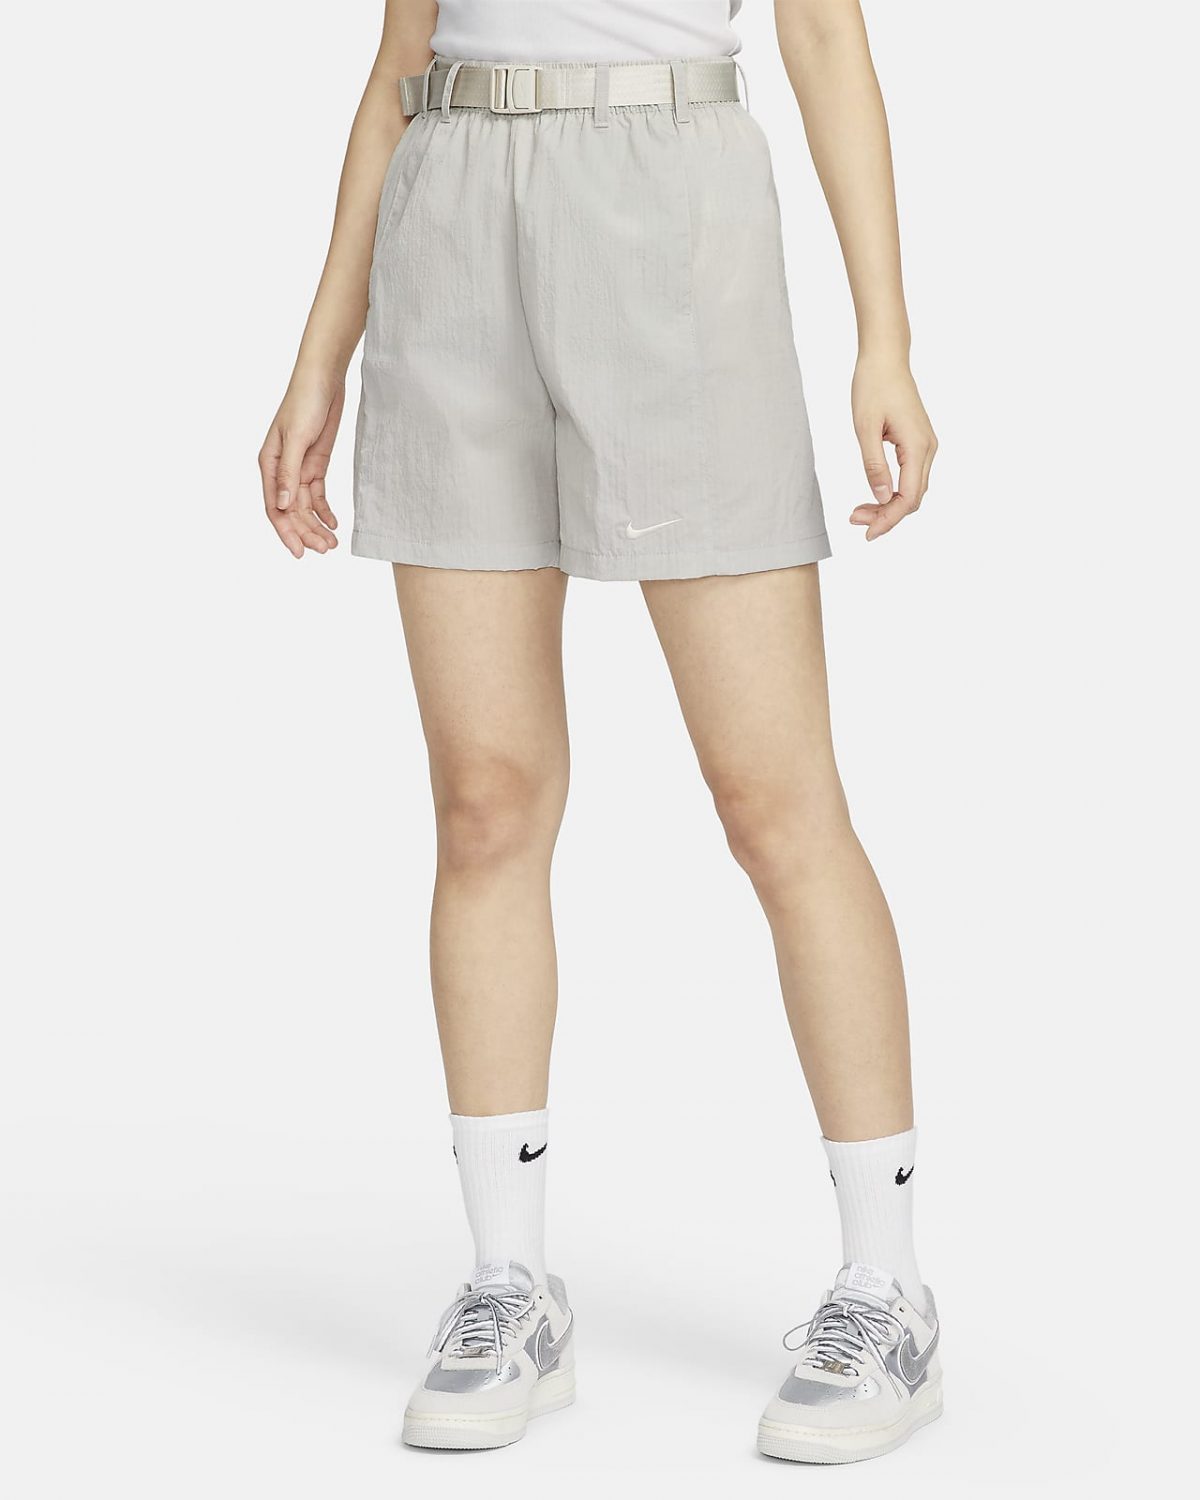 Женские шорты Nike Sportswear серые фото